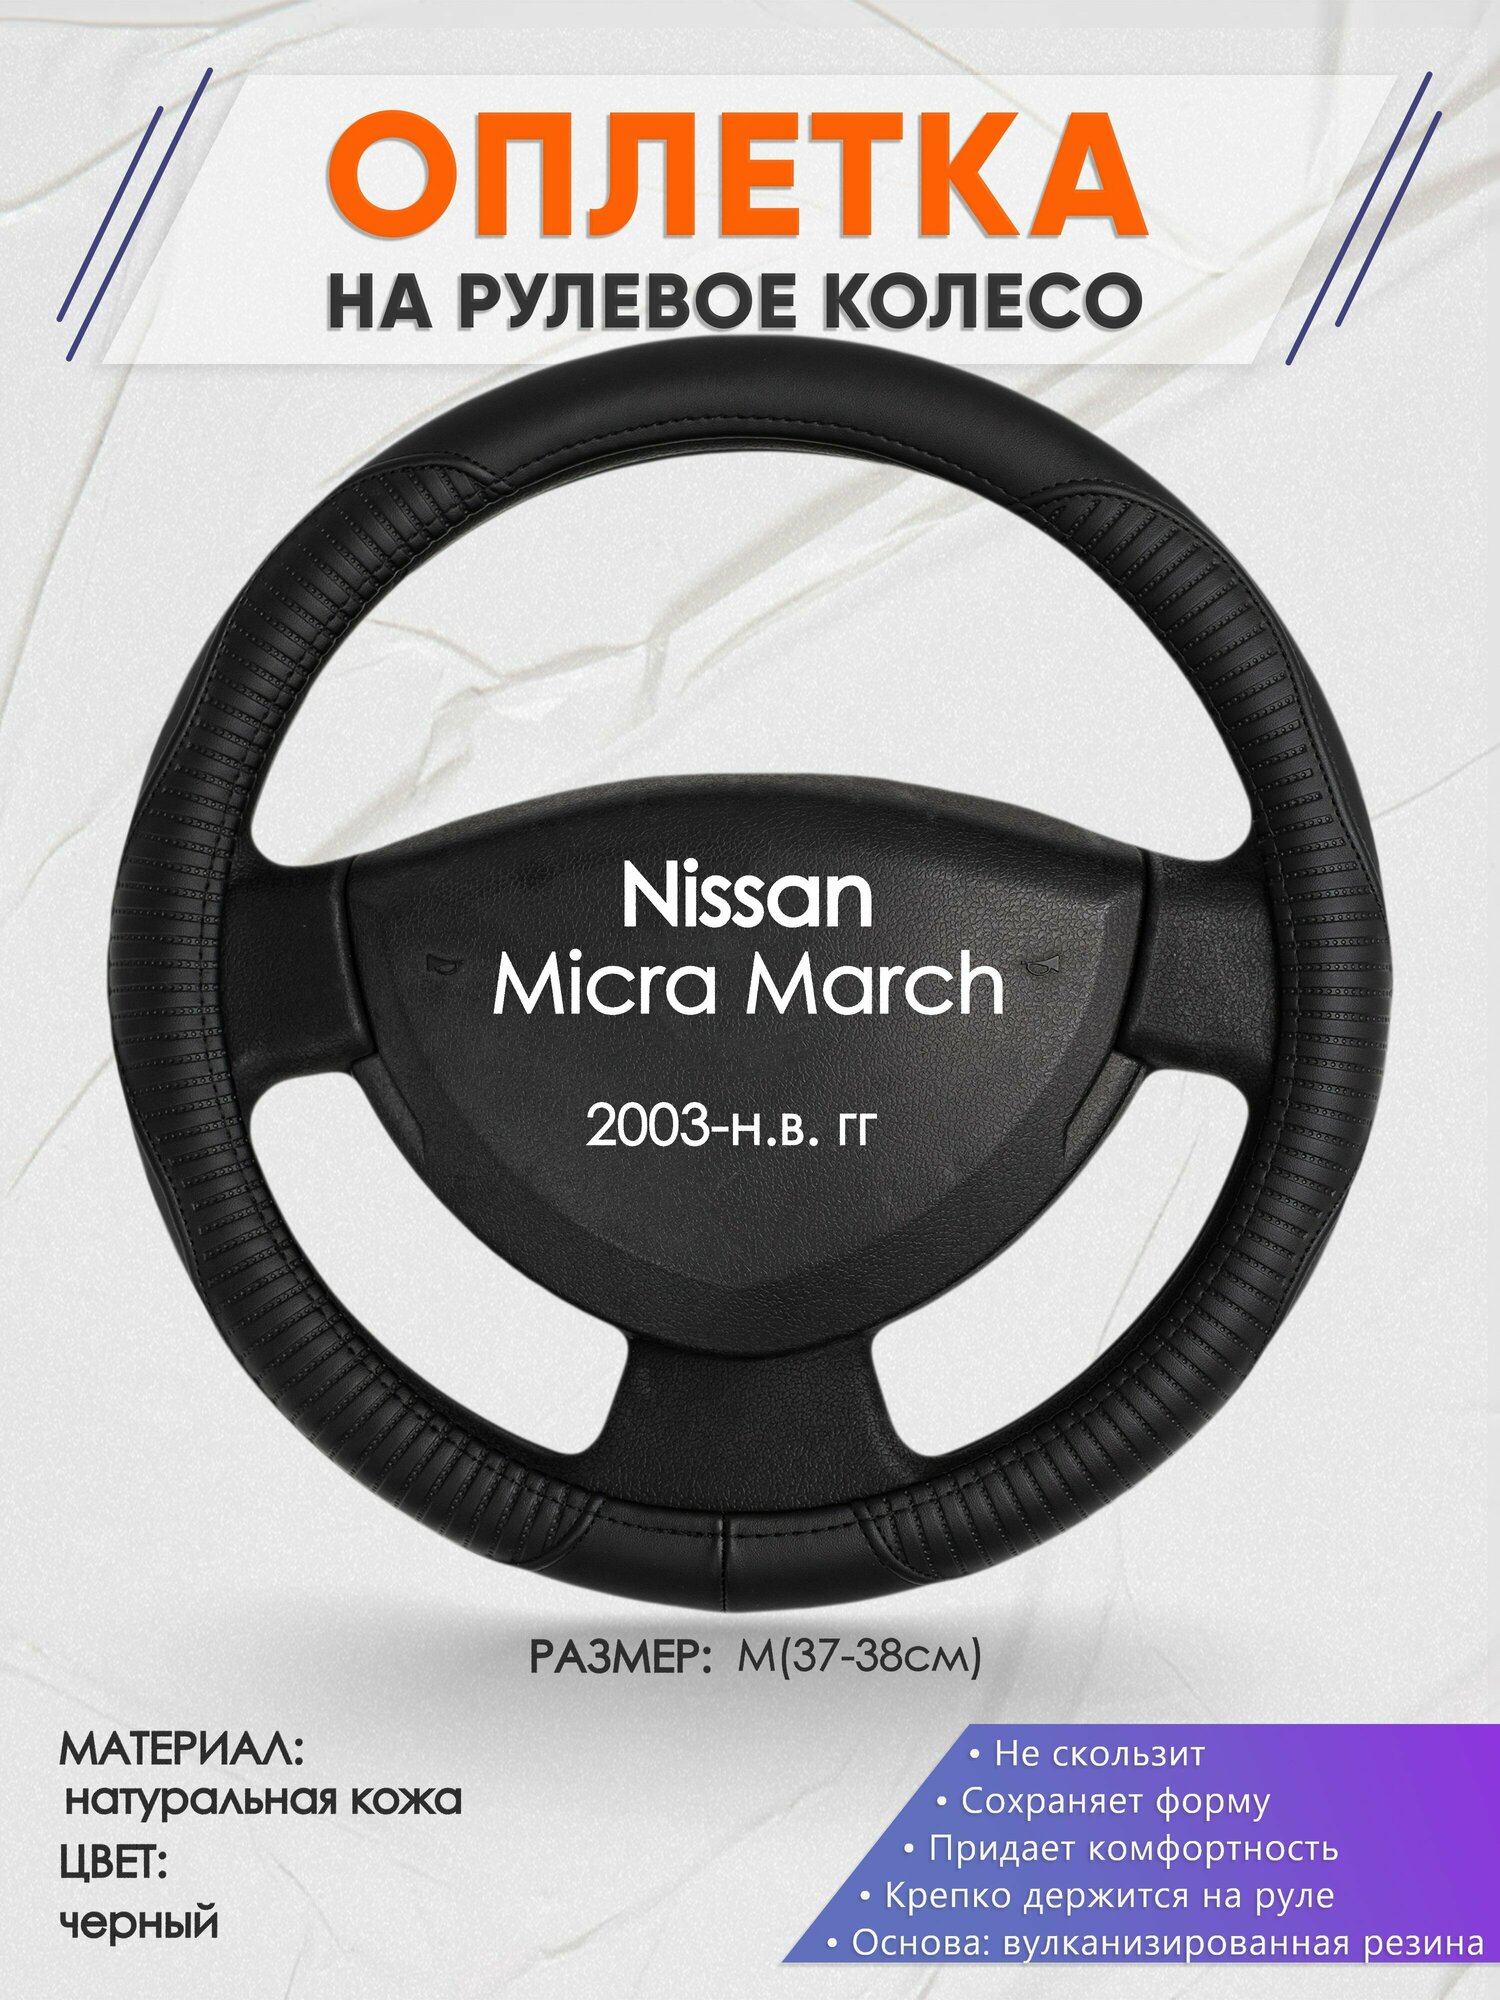 Оплетка на руль для Nissan Micra March(Ниссан Микра) 2003-н. в, M(37-38см), Натуральная кожа 22